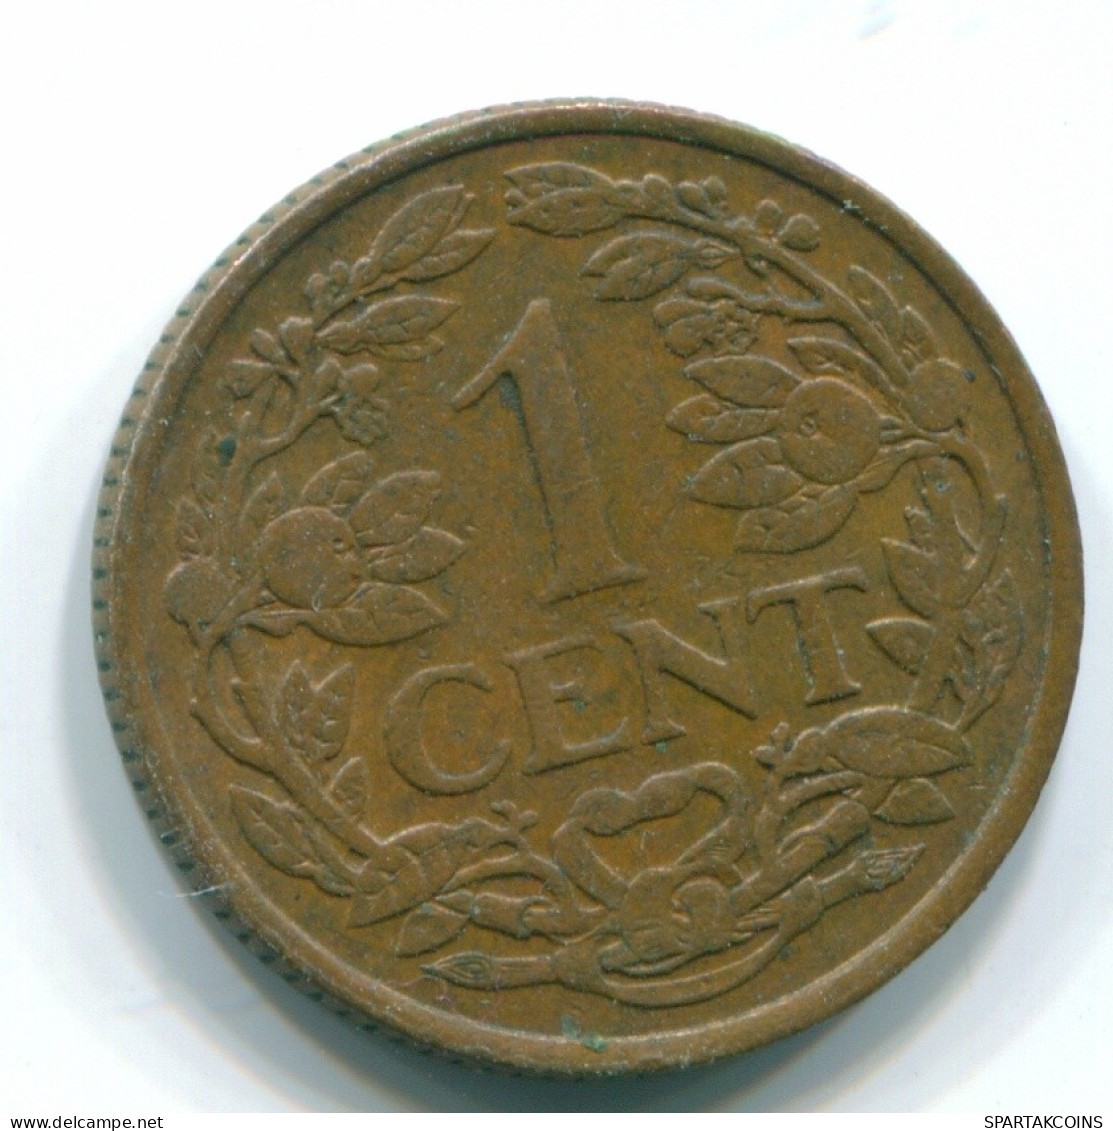 1 CENT 1965 NIEDERLÄNDISCHE ANTILLEN Bronze Fish Koloniale Münze #S11126.D.A - Niederländische Antillen